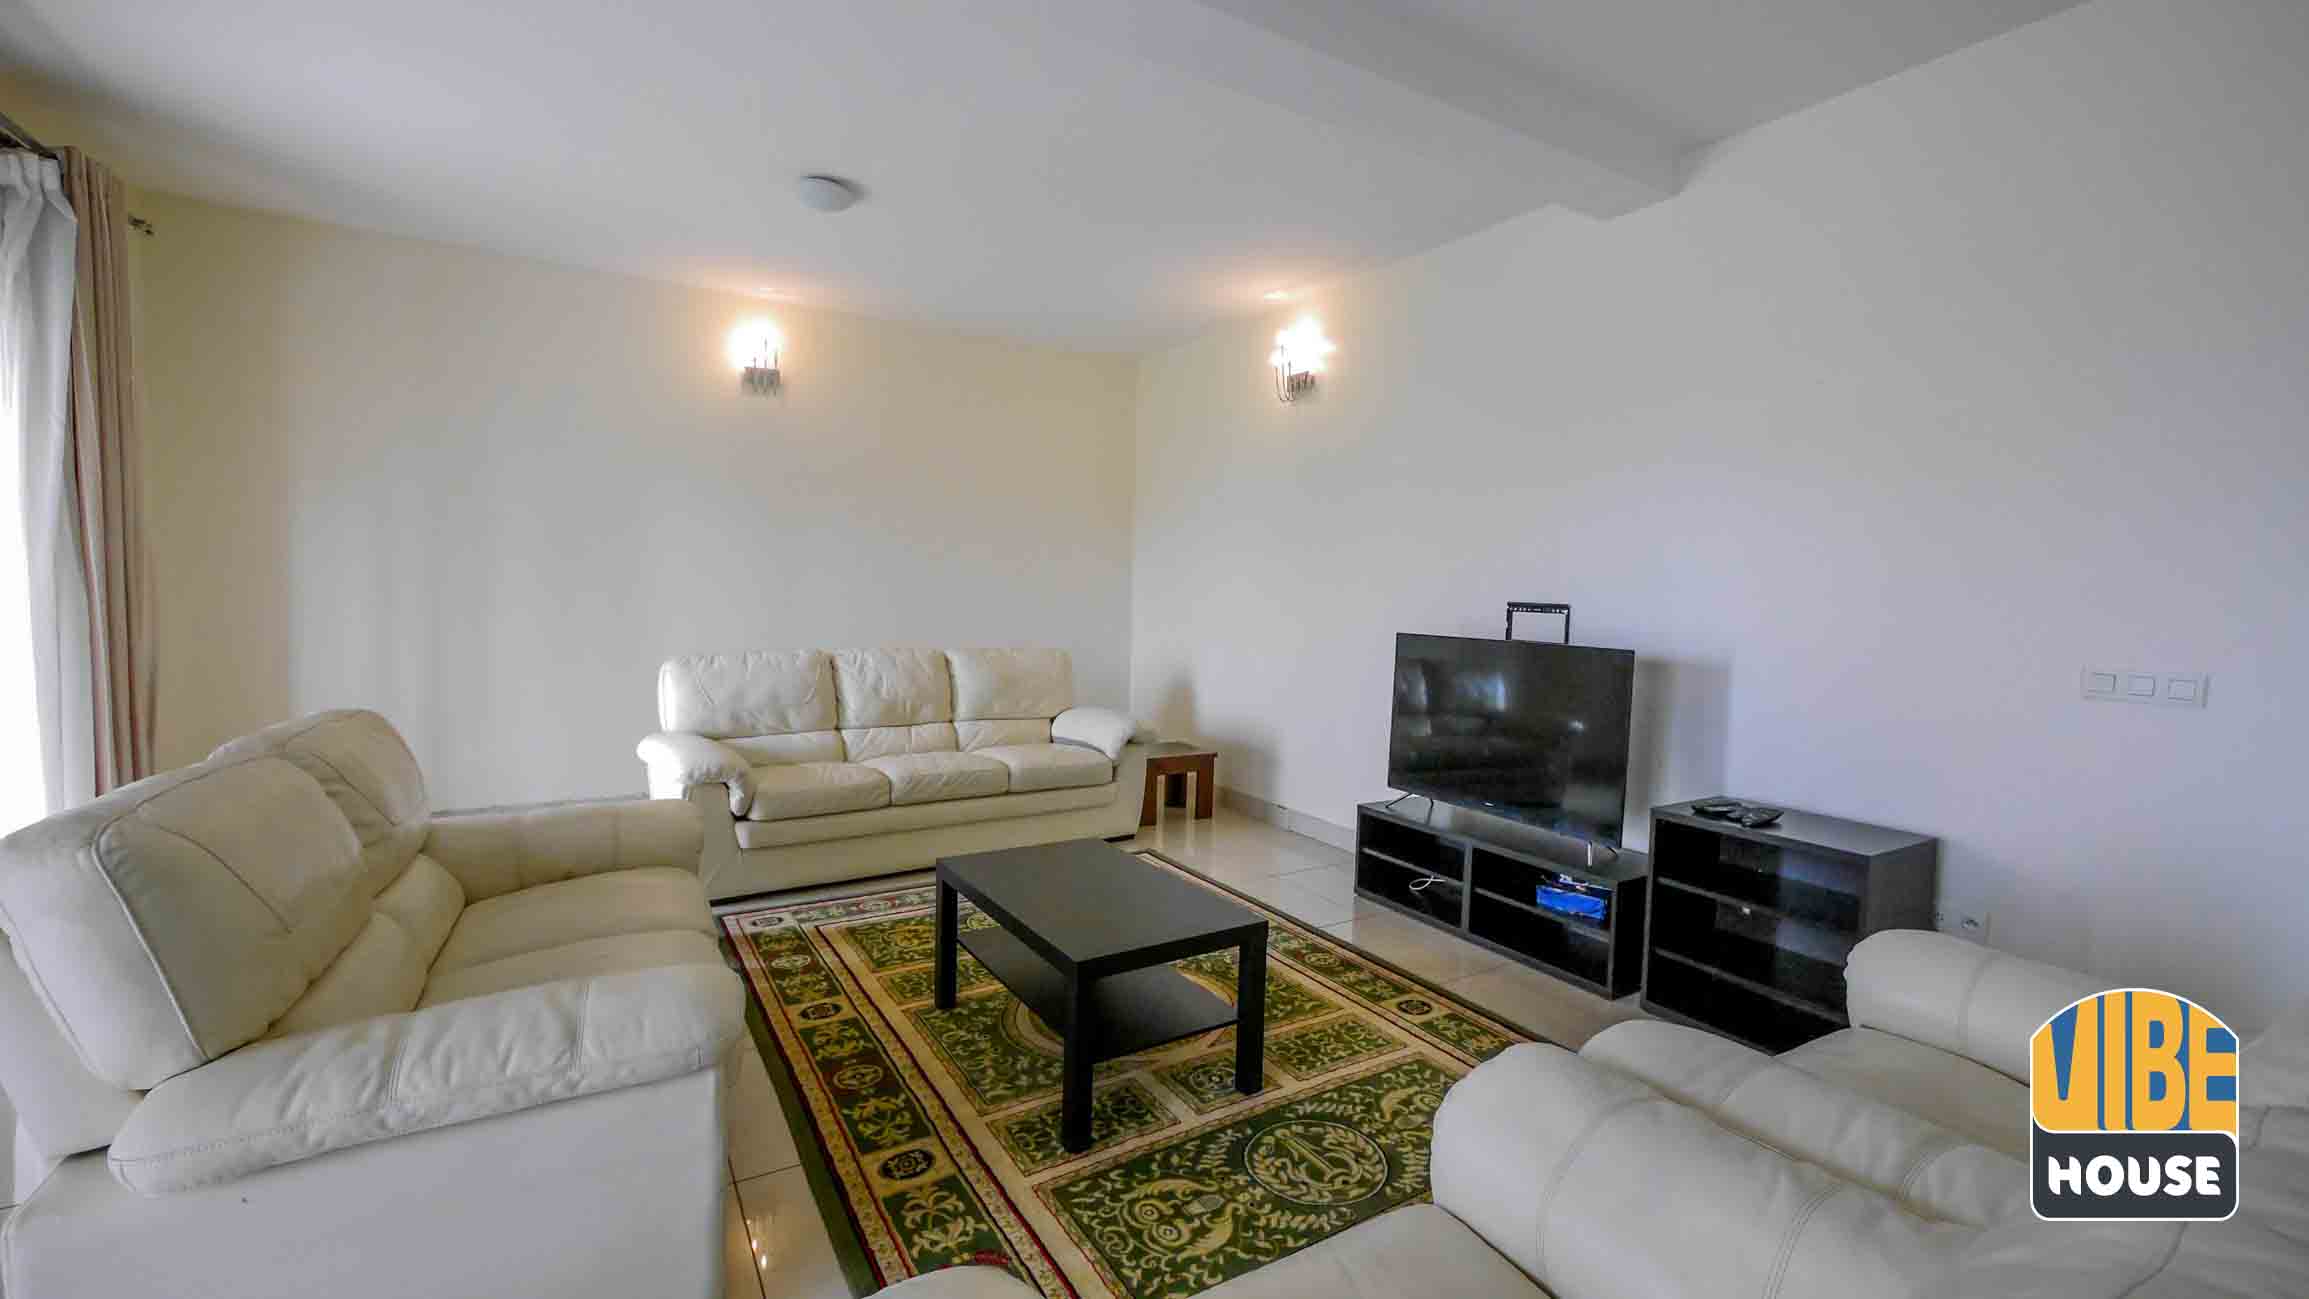 Beautiful interior design in house for rent in Kibagabaga, Kigali